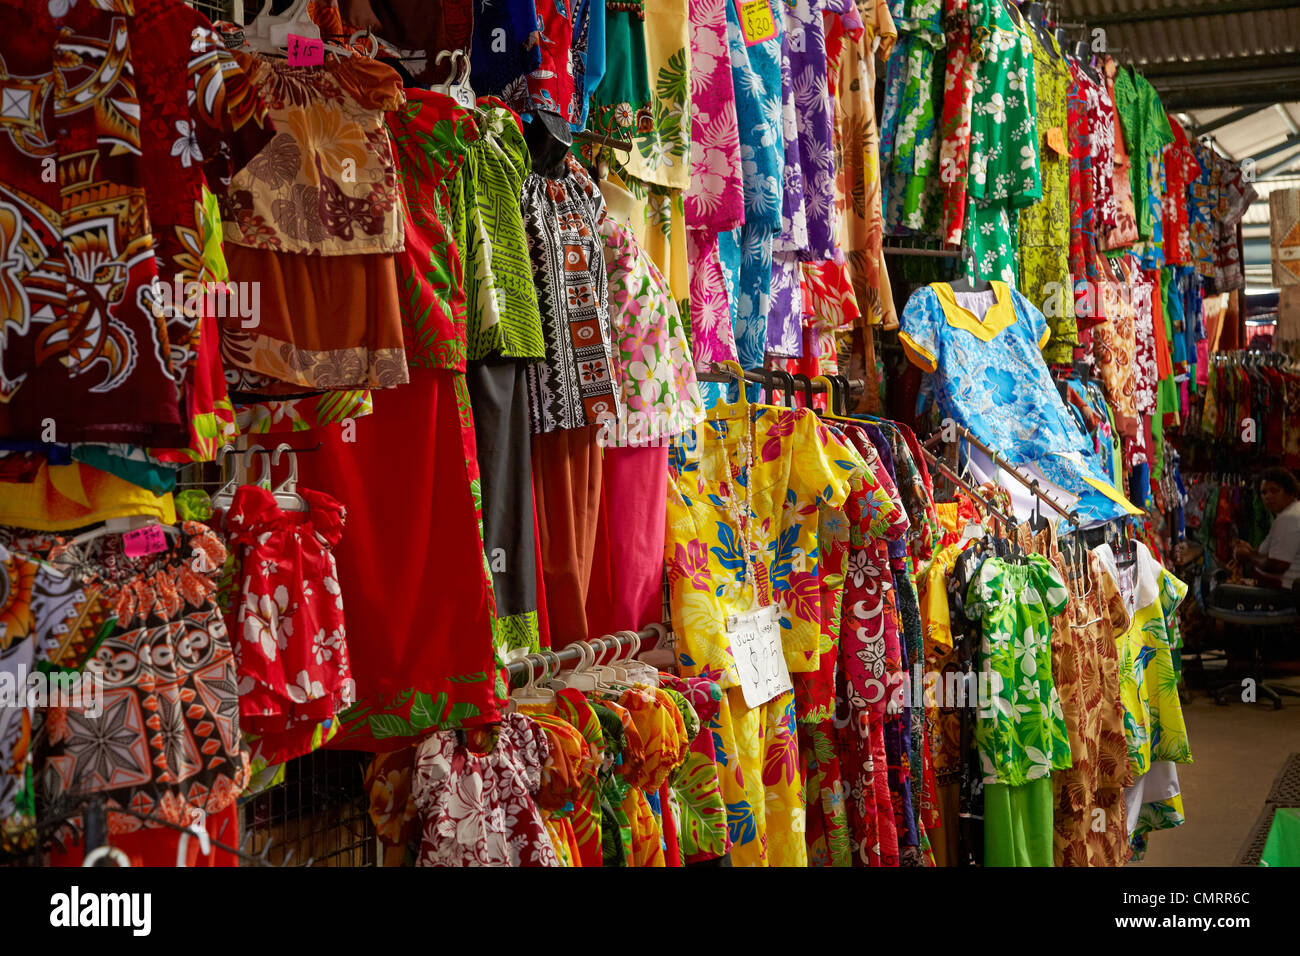 Clothing stall at Suva Flea Market, Suva, Viti Levu, Fiji, South Pacific Stock Photo